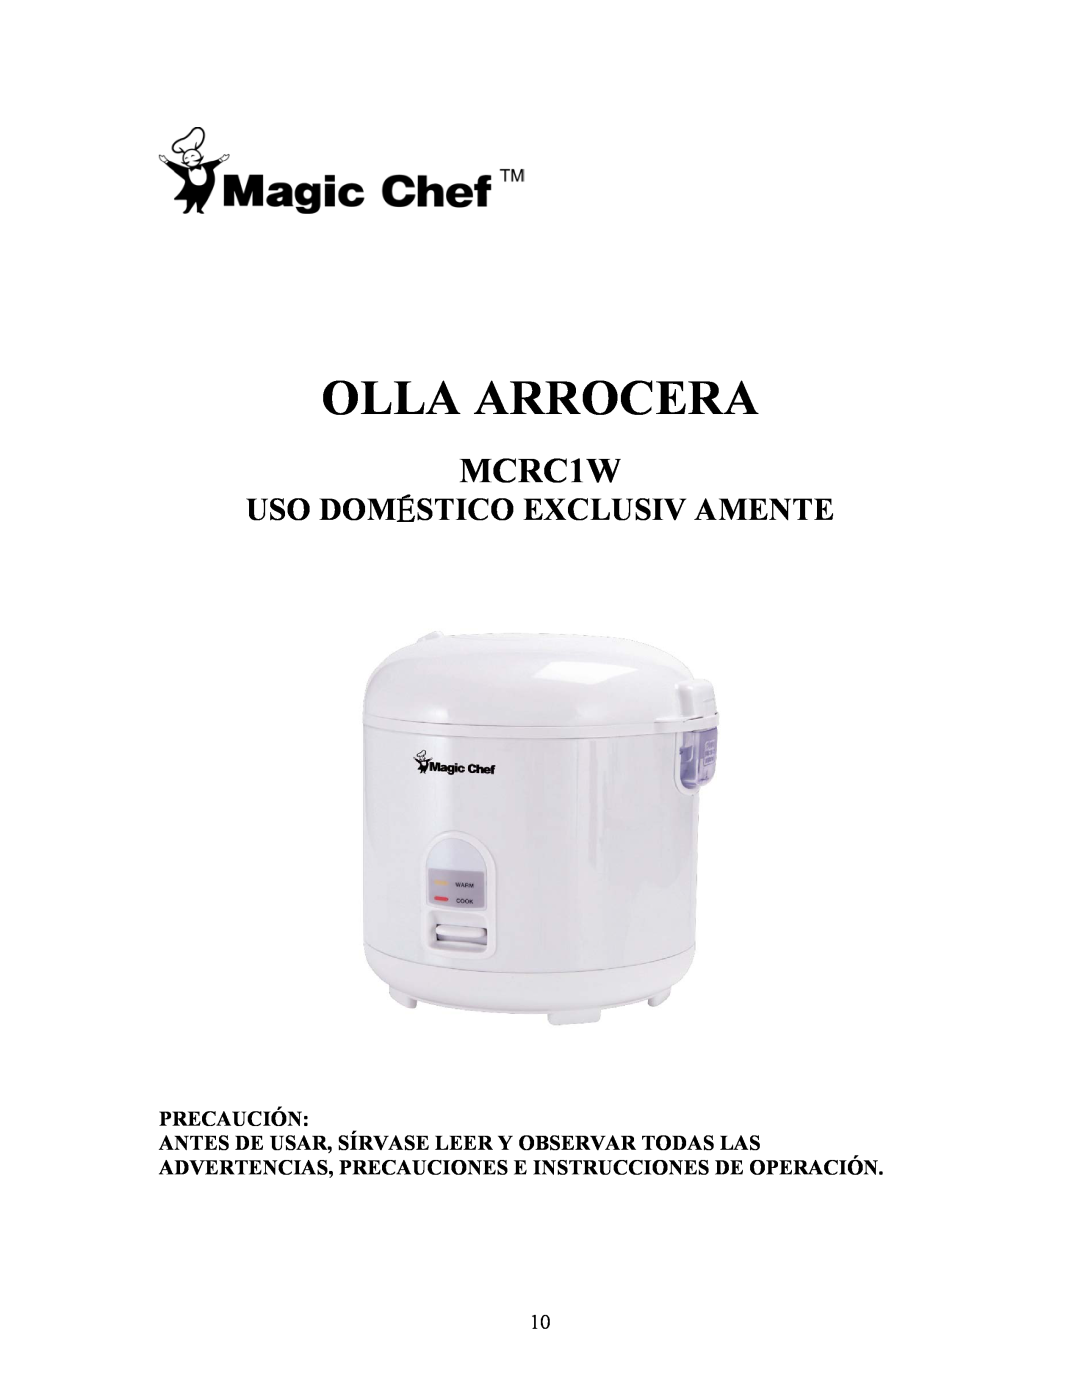 Magic Chef MCRC1W manual Olla Arrocera, Uso Doméstico Exclusiv Amente, Precaución 